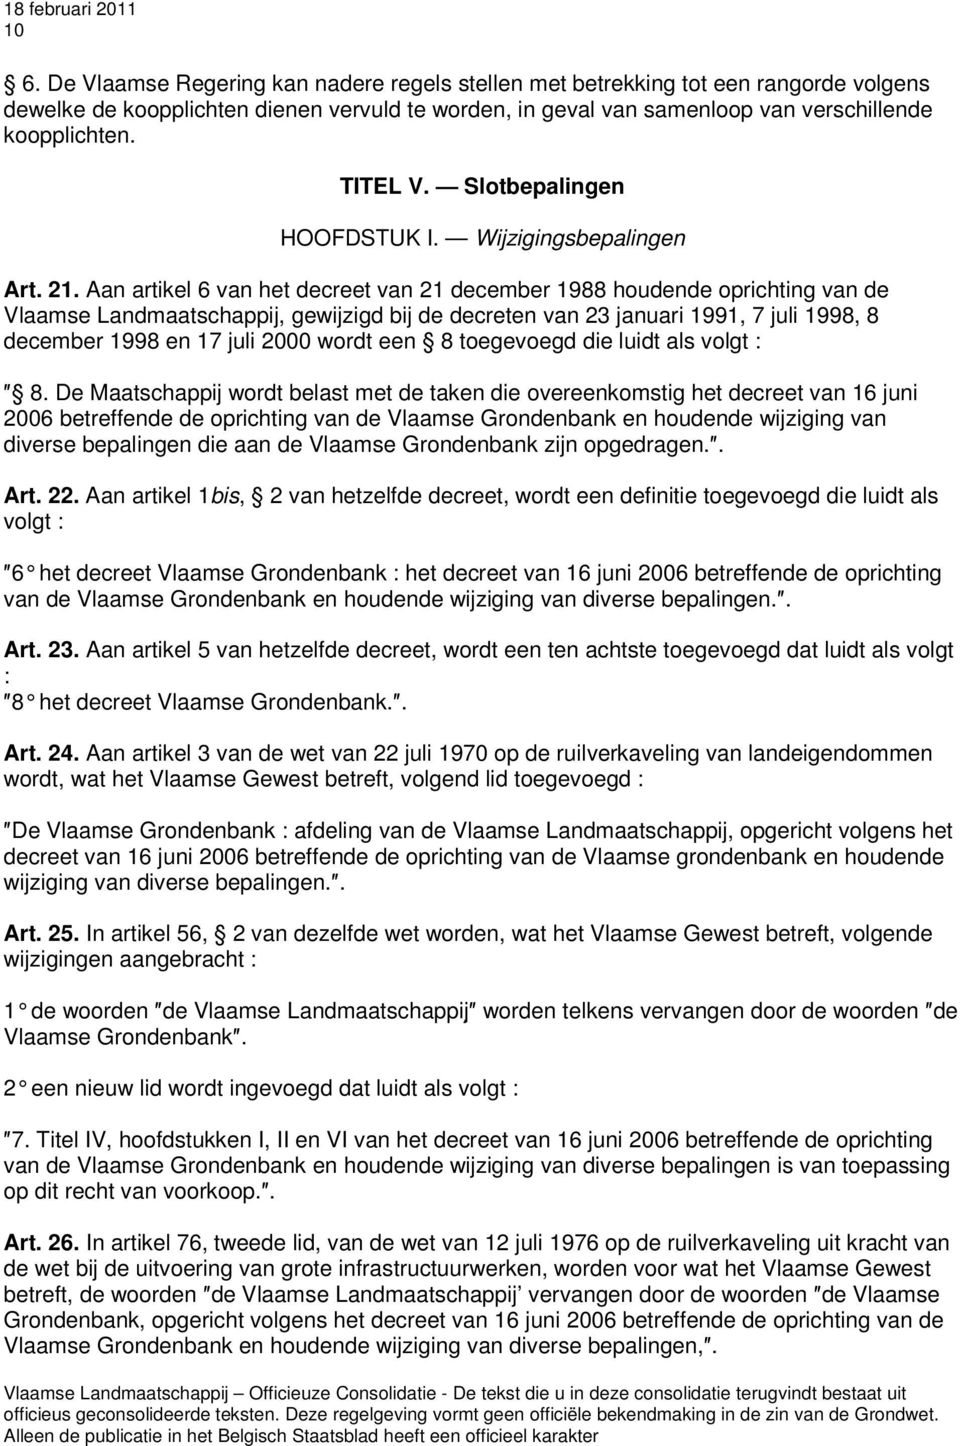 Aan artikel 6 van het decreet van 21 december 1988 houdende oprichting van de Vlaamse Landmaatschappij, gewijzigd bij de decreten van 23 januari 1991, 7 juli 1998, 8 december 1998 en 17 juli 2000